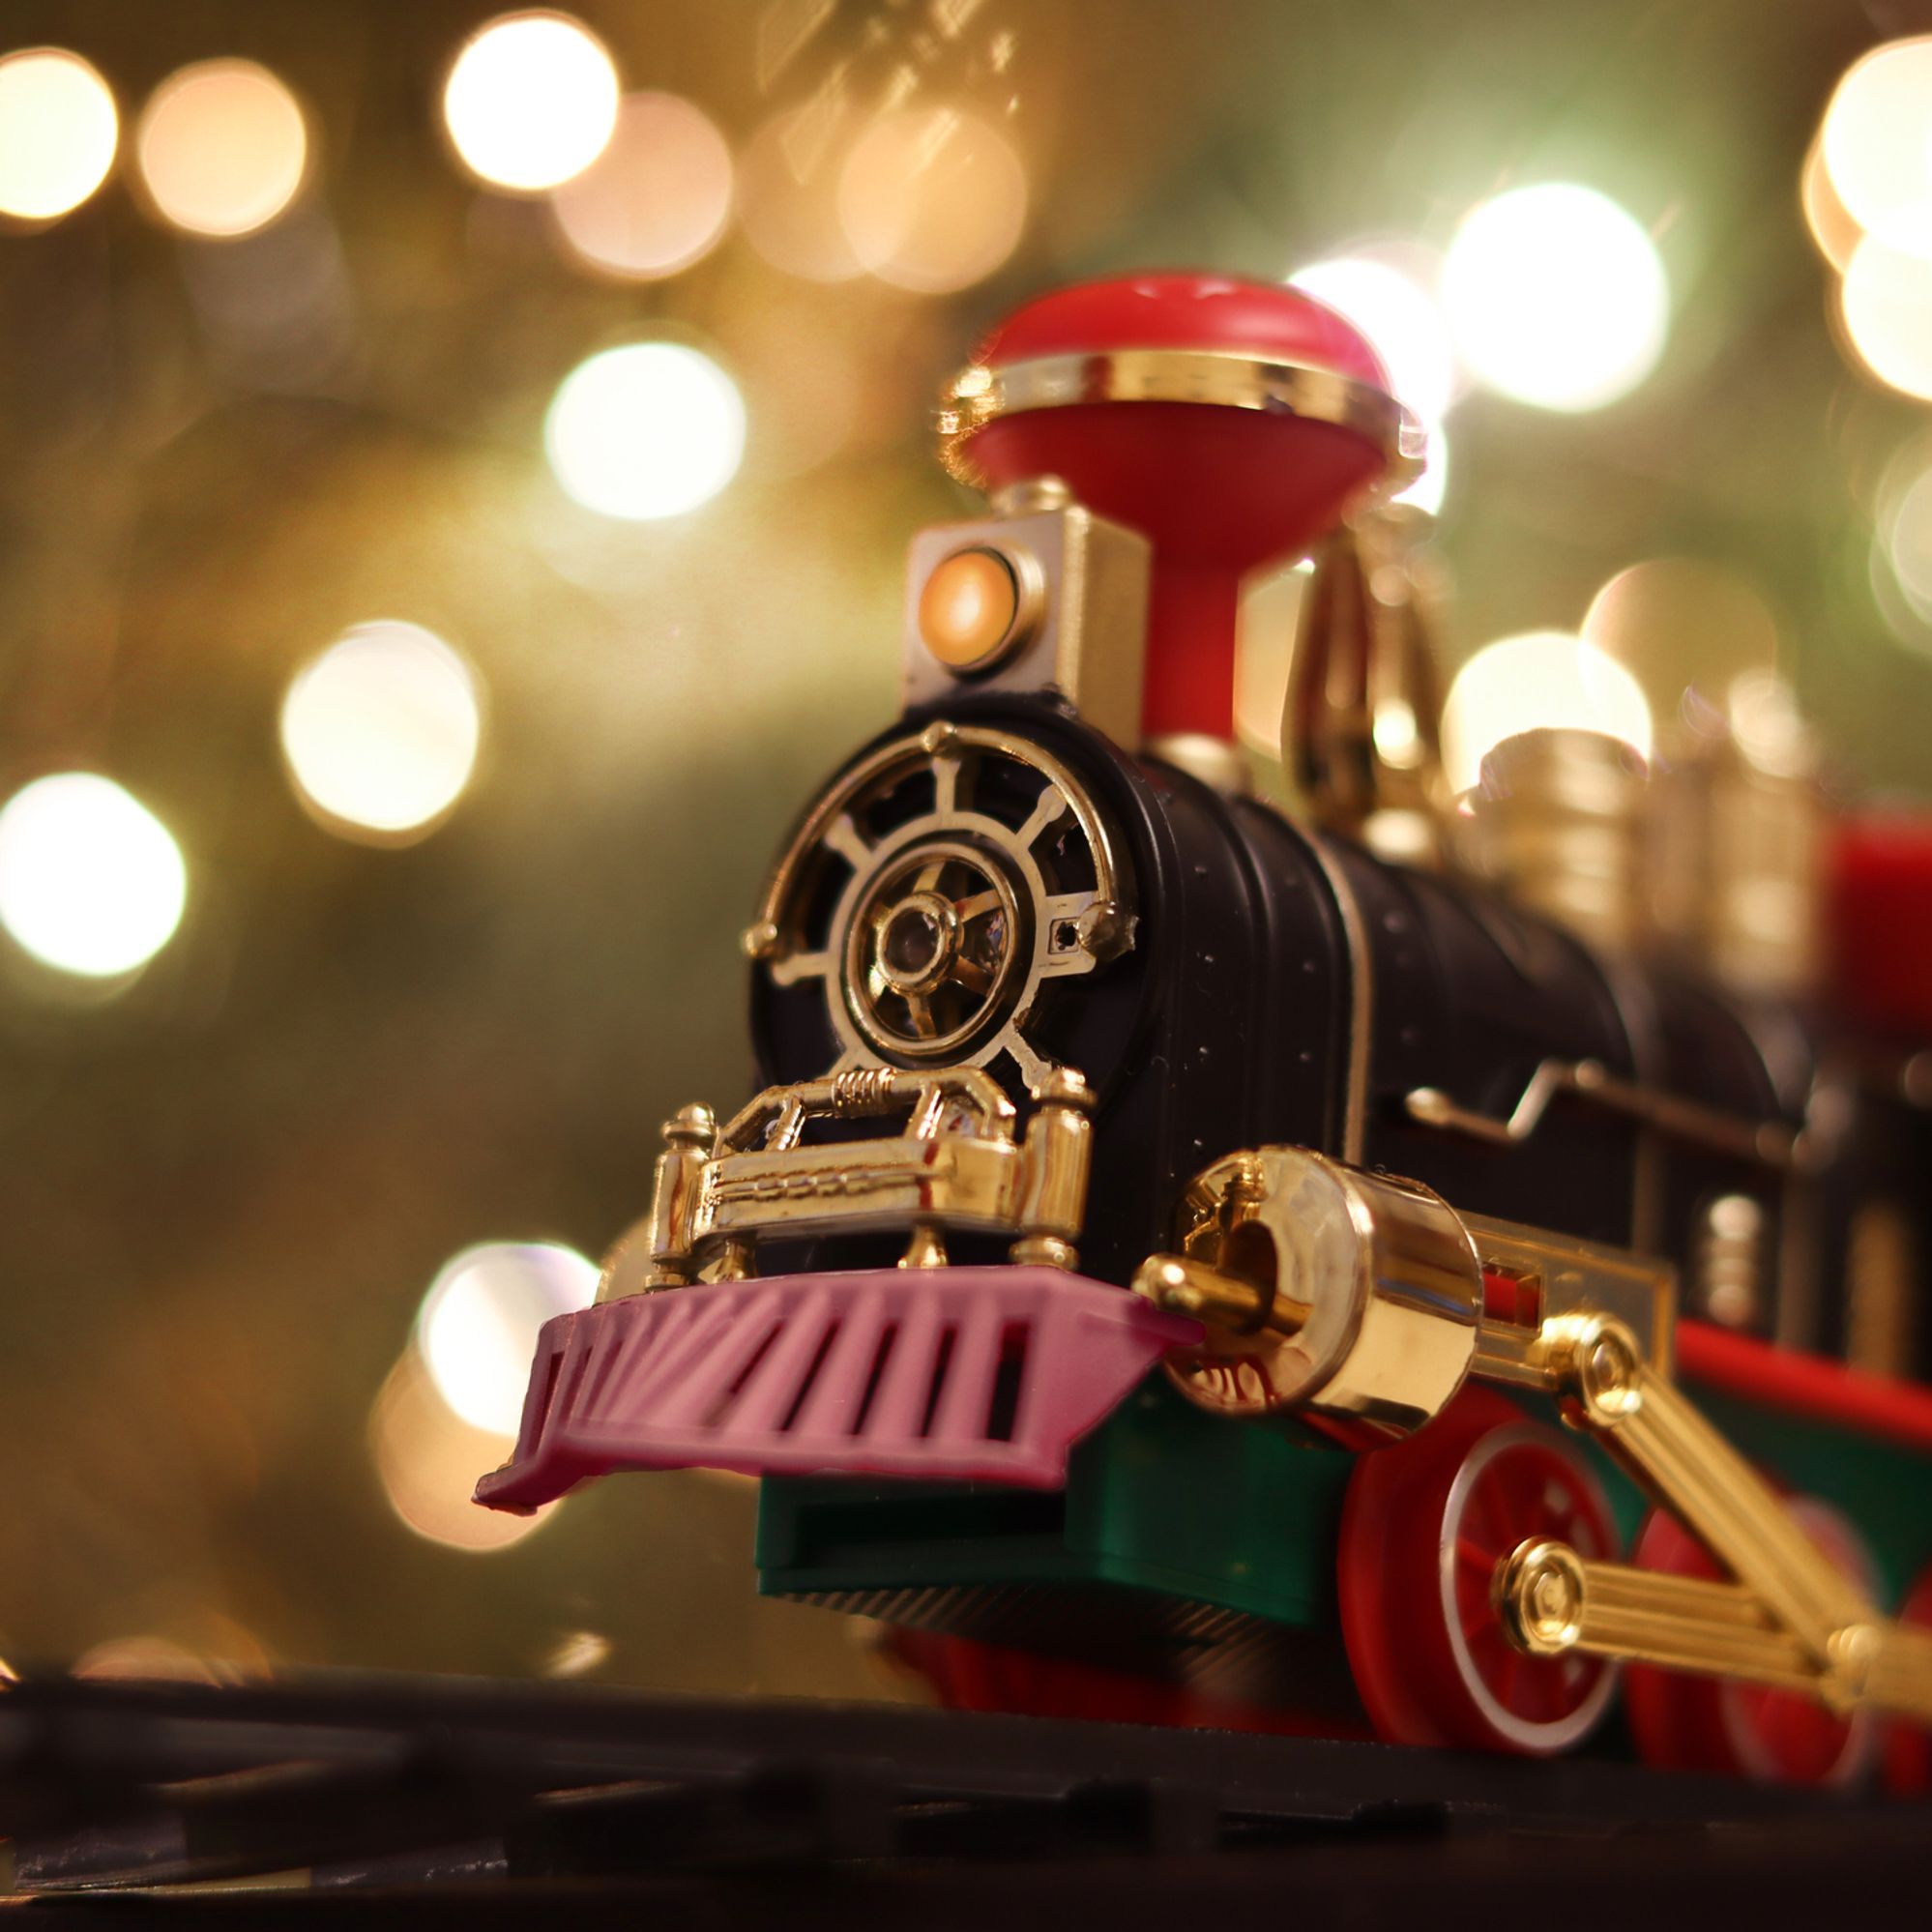 Non Incluses AAA Alimenté par Batterie Convient comme Cadeau De Noël pour Les Enfant Train Jouet ABS Classique pour Enfant VERLOCO Train Électrique Compatible avec Piste en Bois Amusants